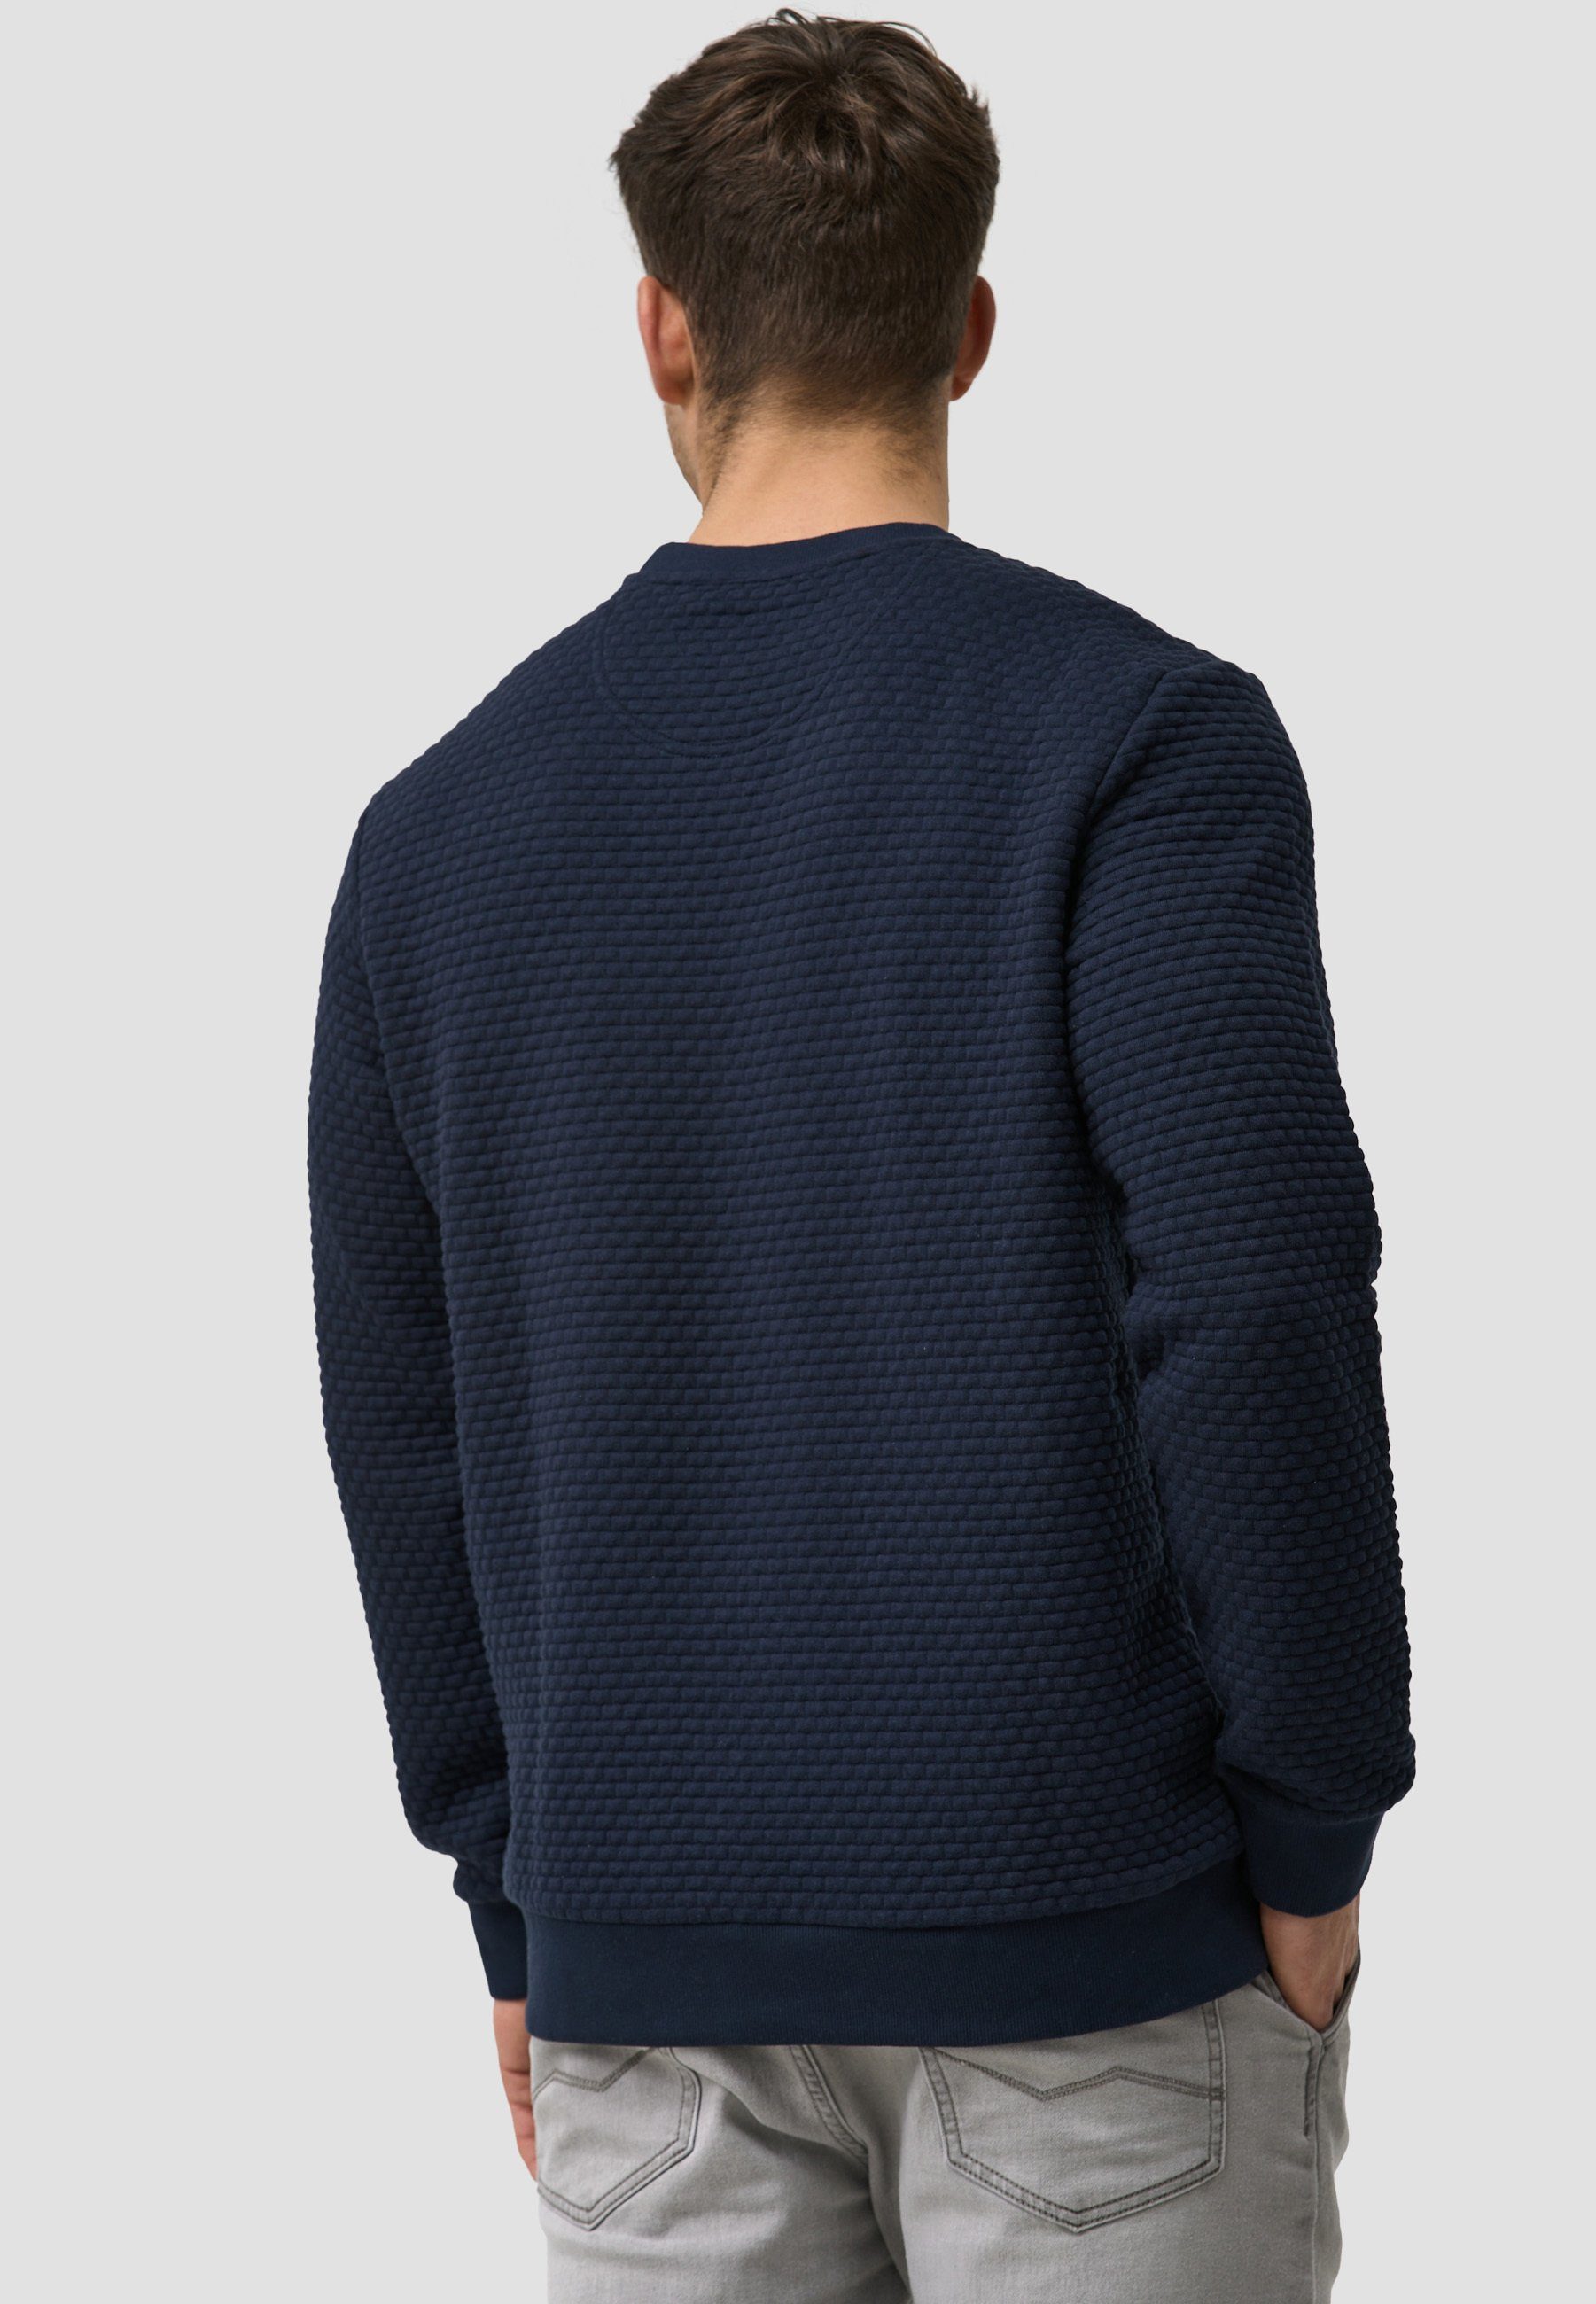 Sweater Indicode Dash Navy